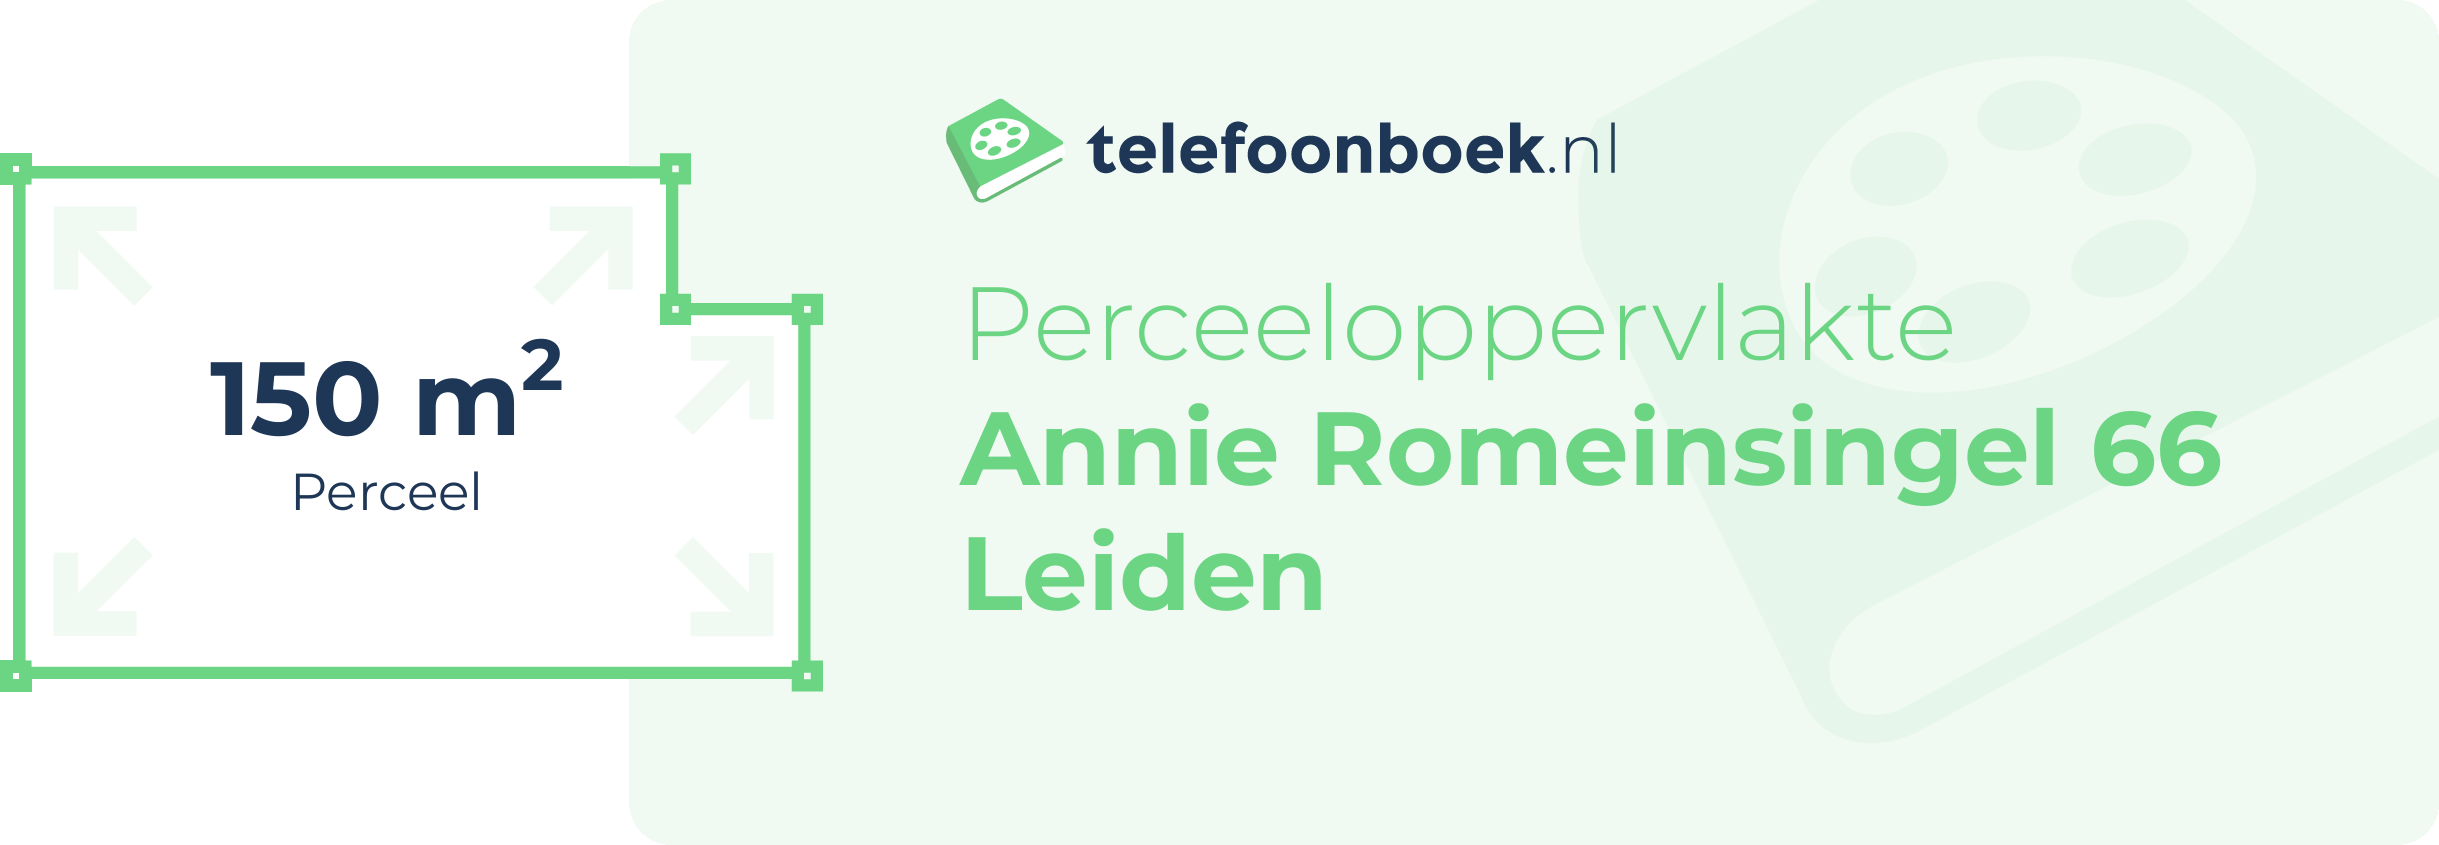 Perceeloppervlakte Annie Romeinsingel 66 Leiden